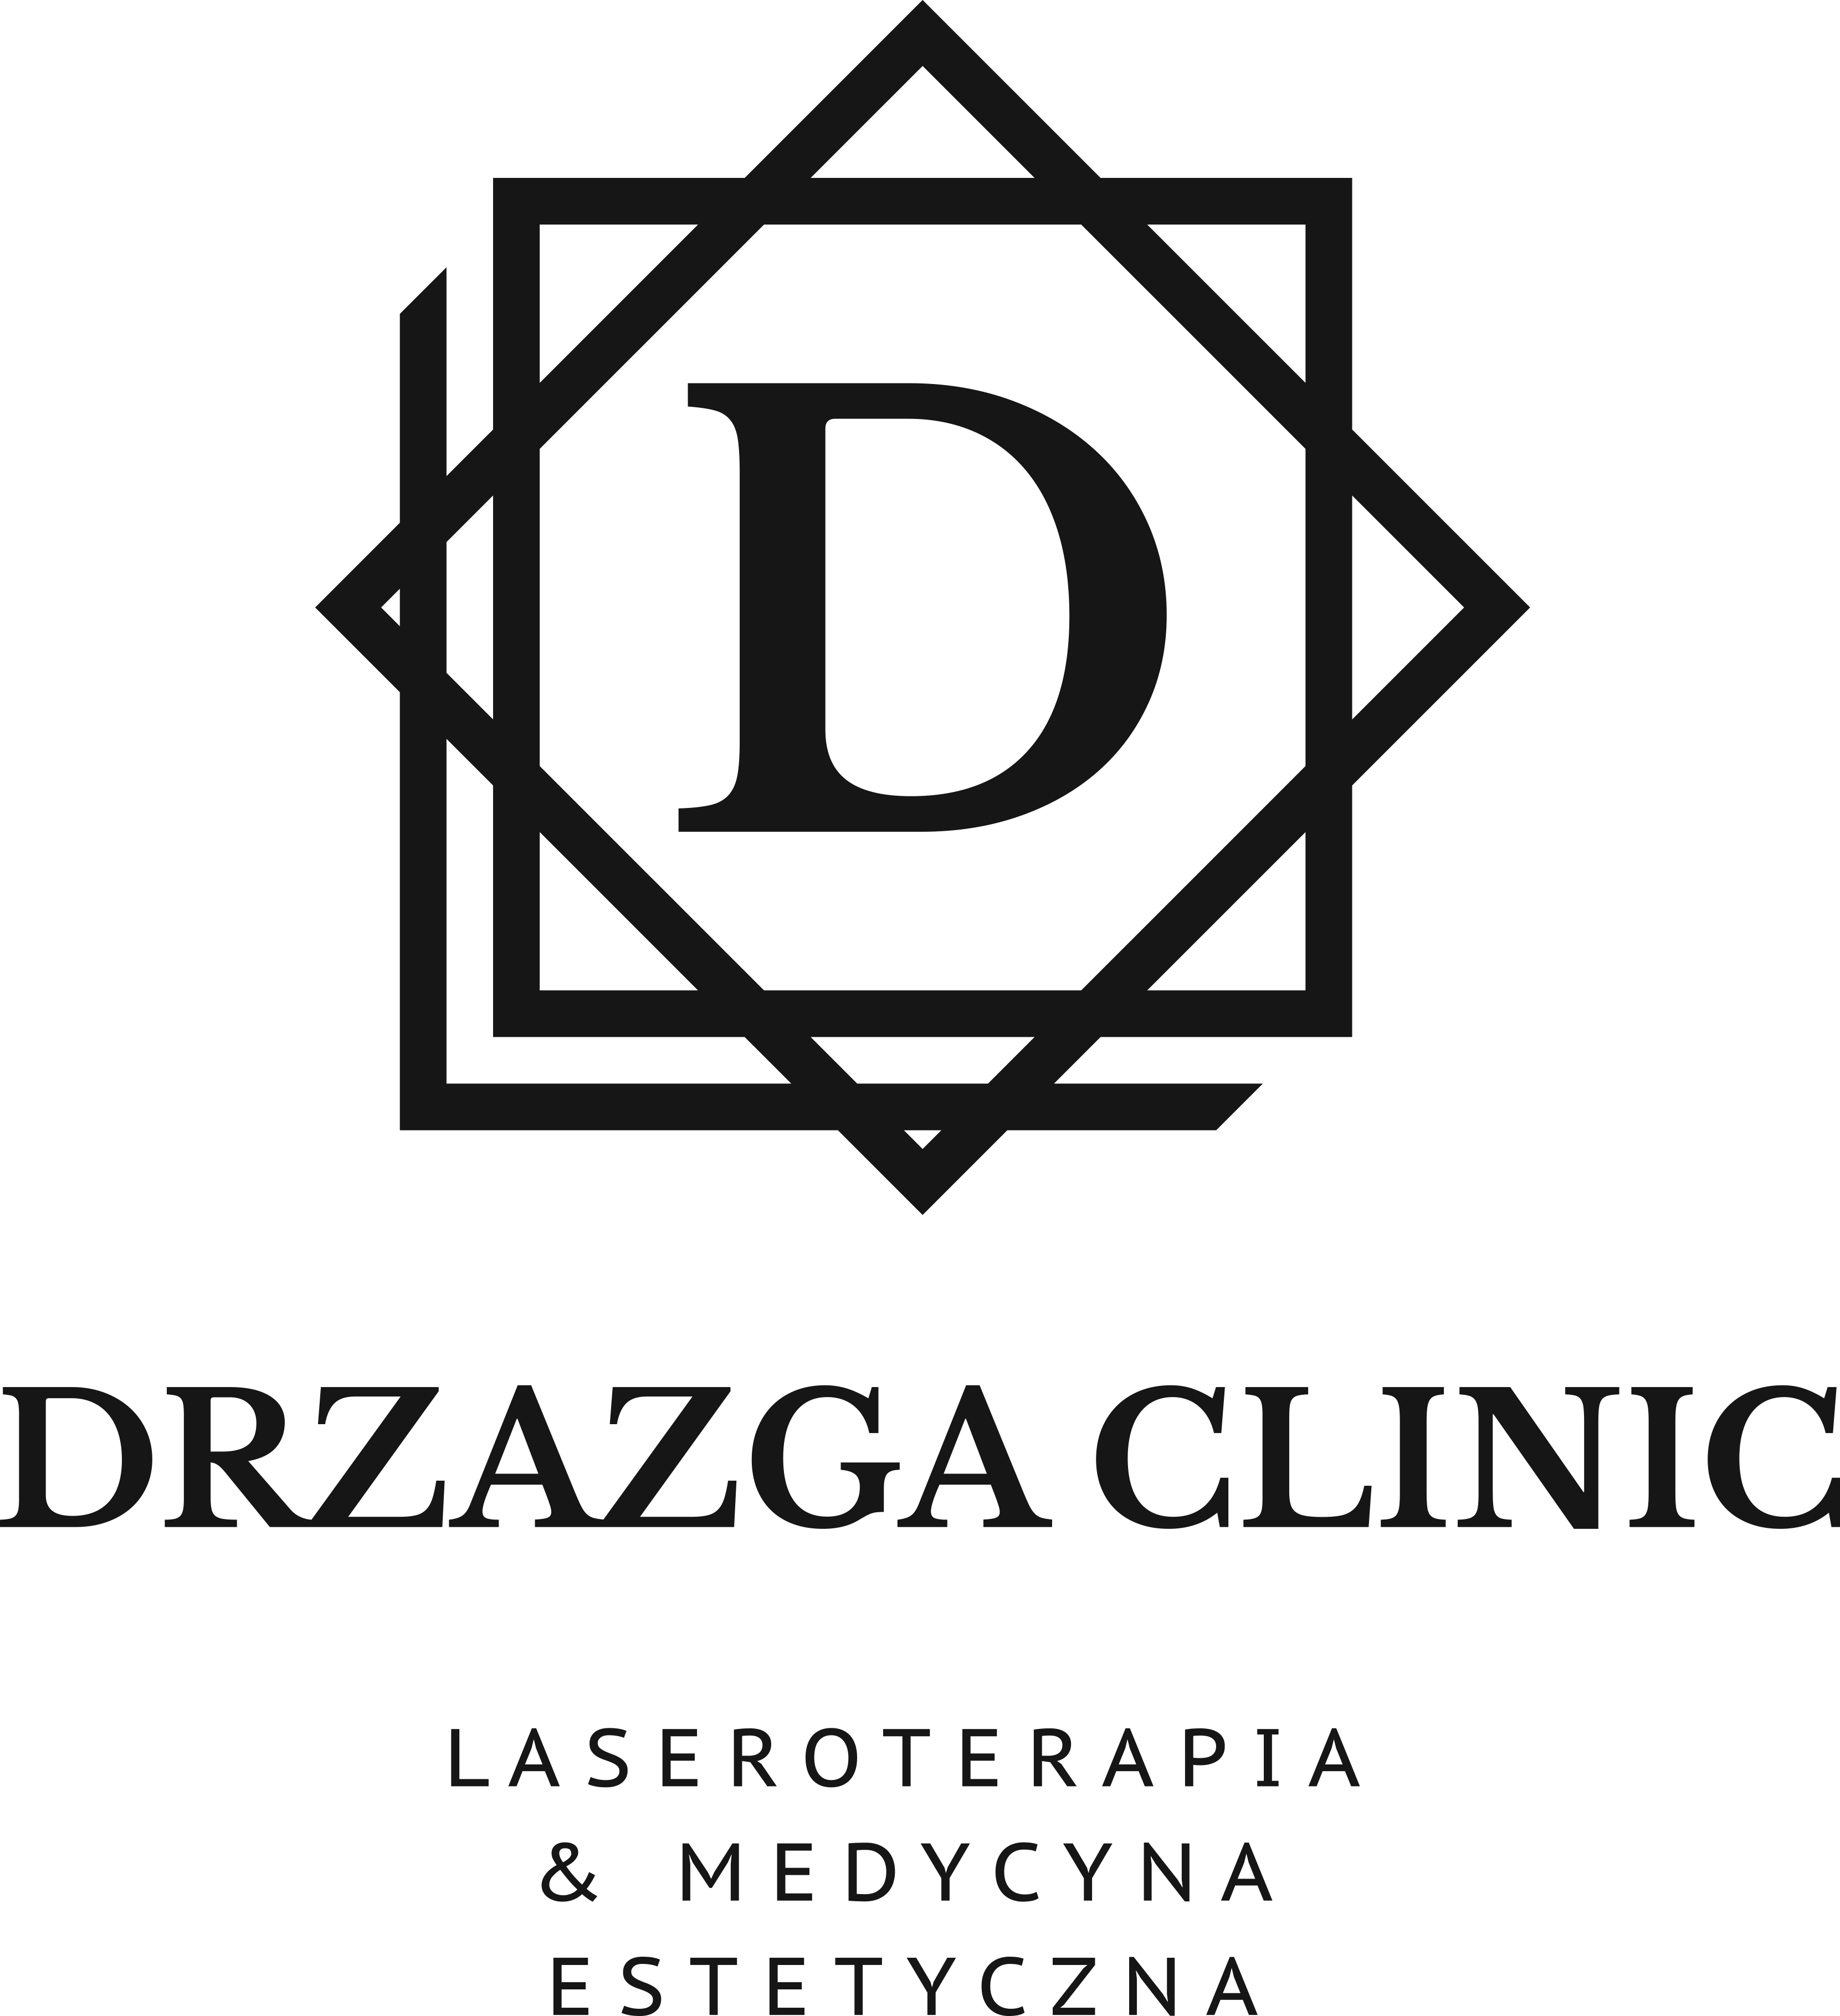 DRZAZGA CLINIC